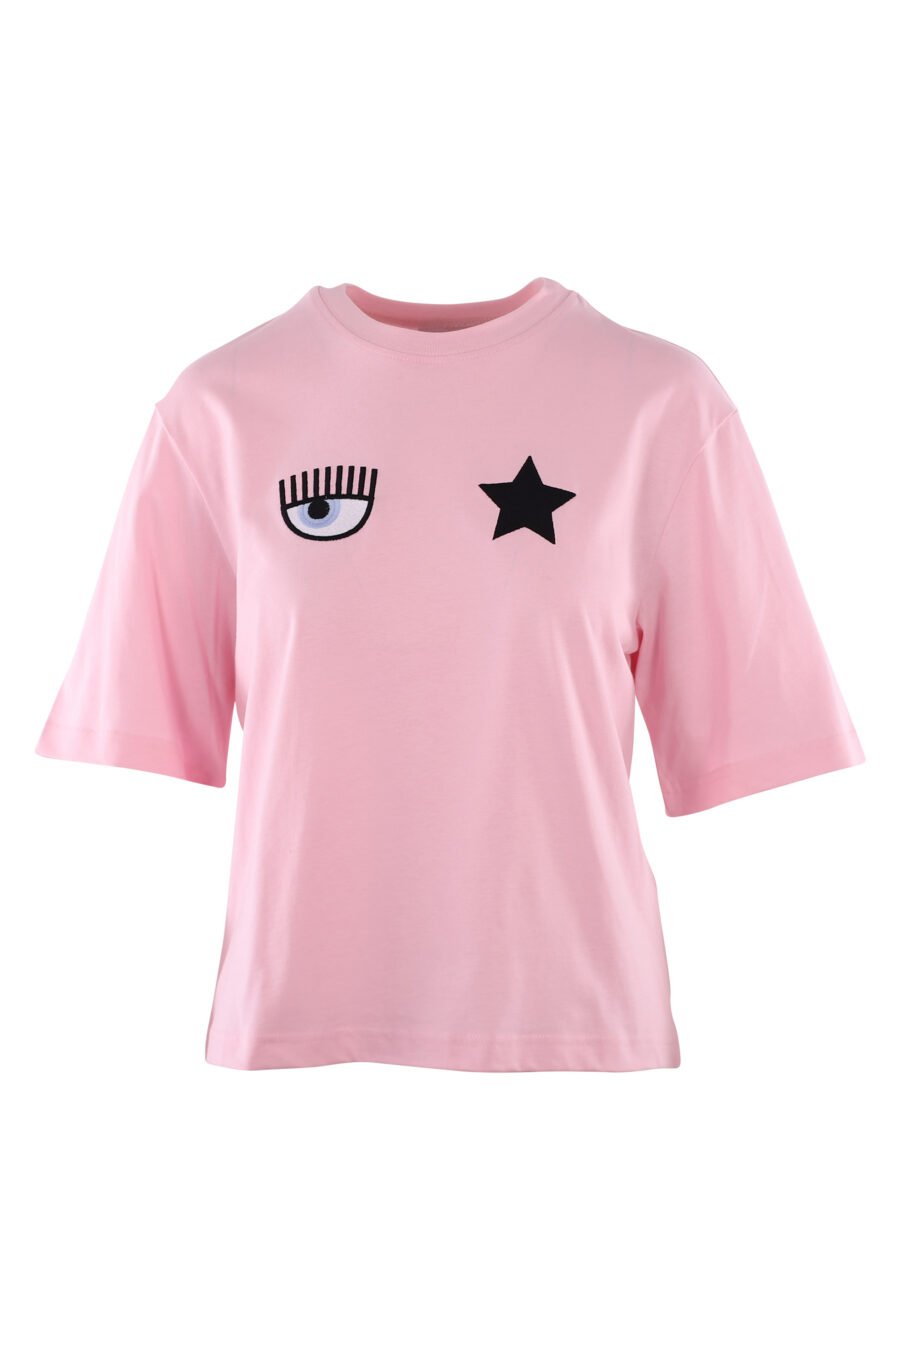 Rosa T-Shirt mit Auge und Stern-Logo - IMG 6123